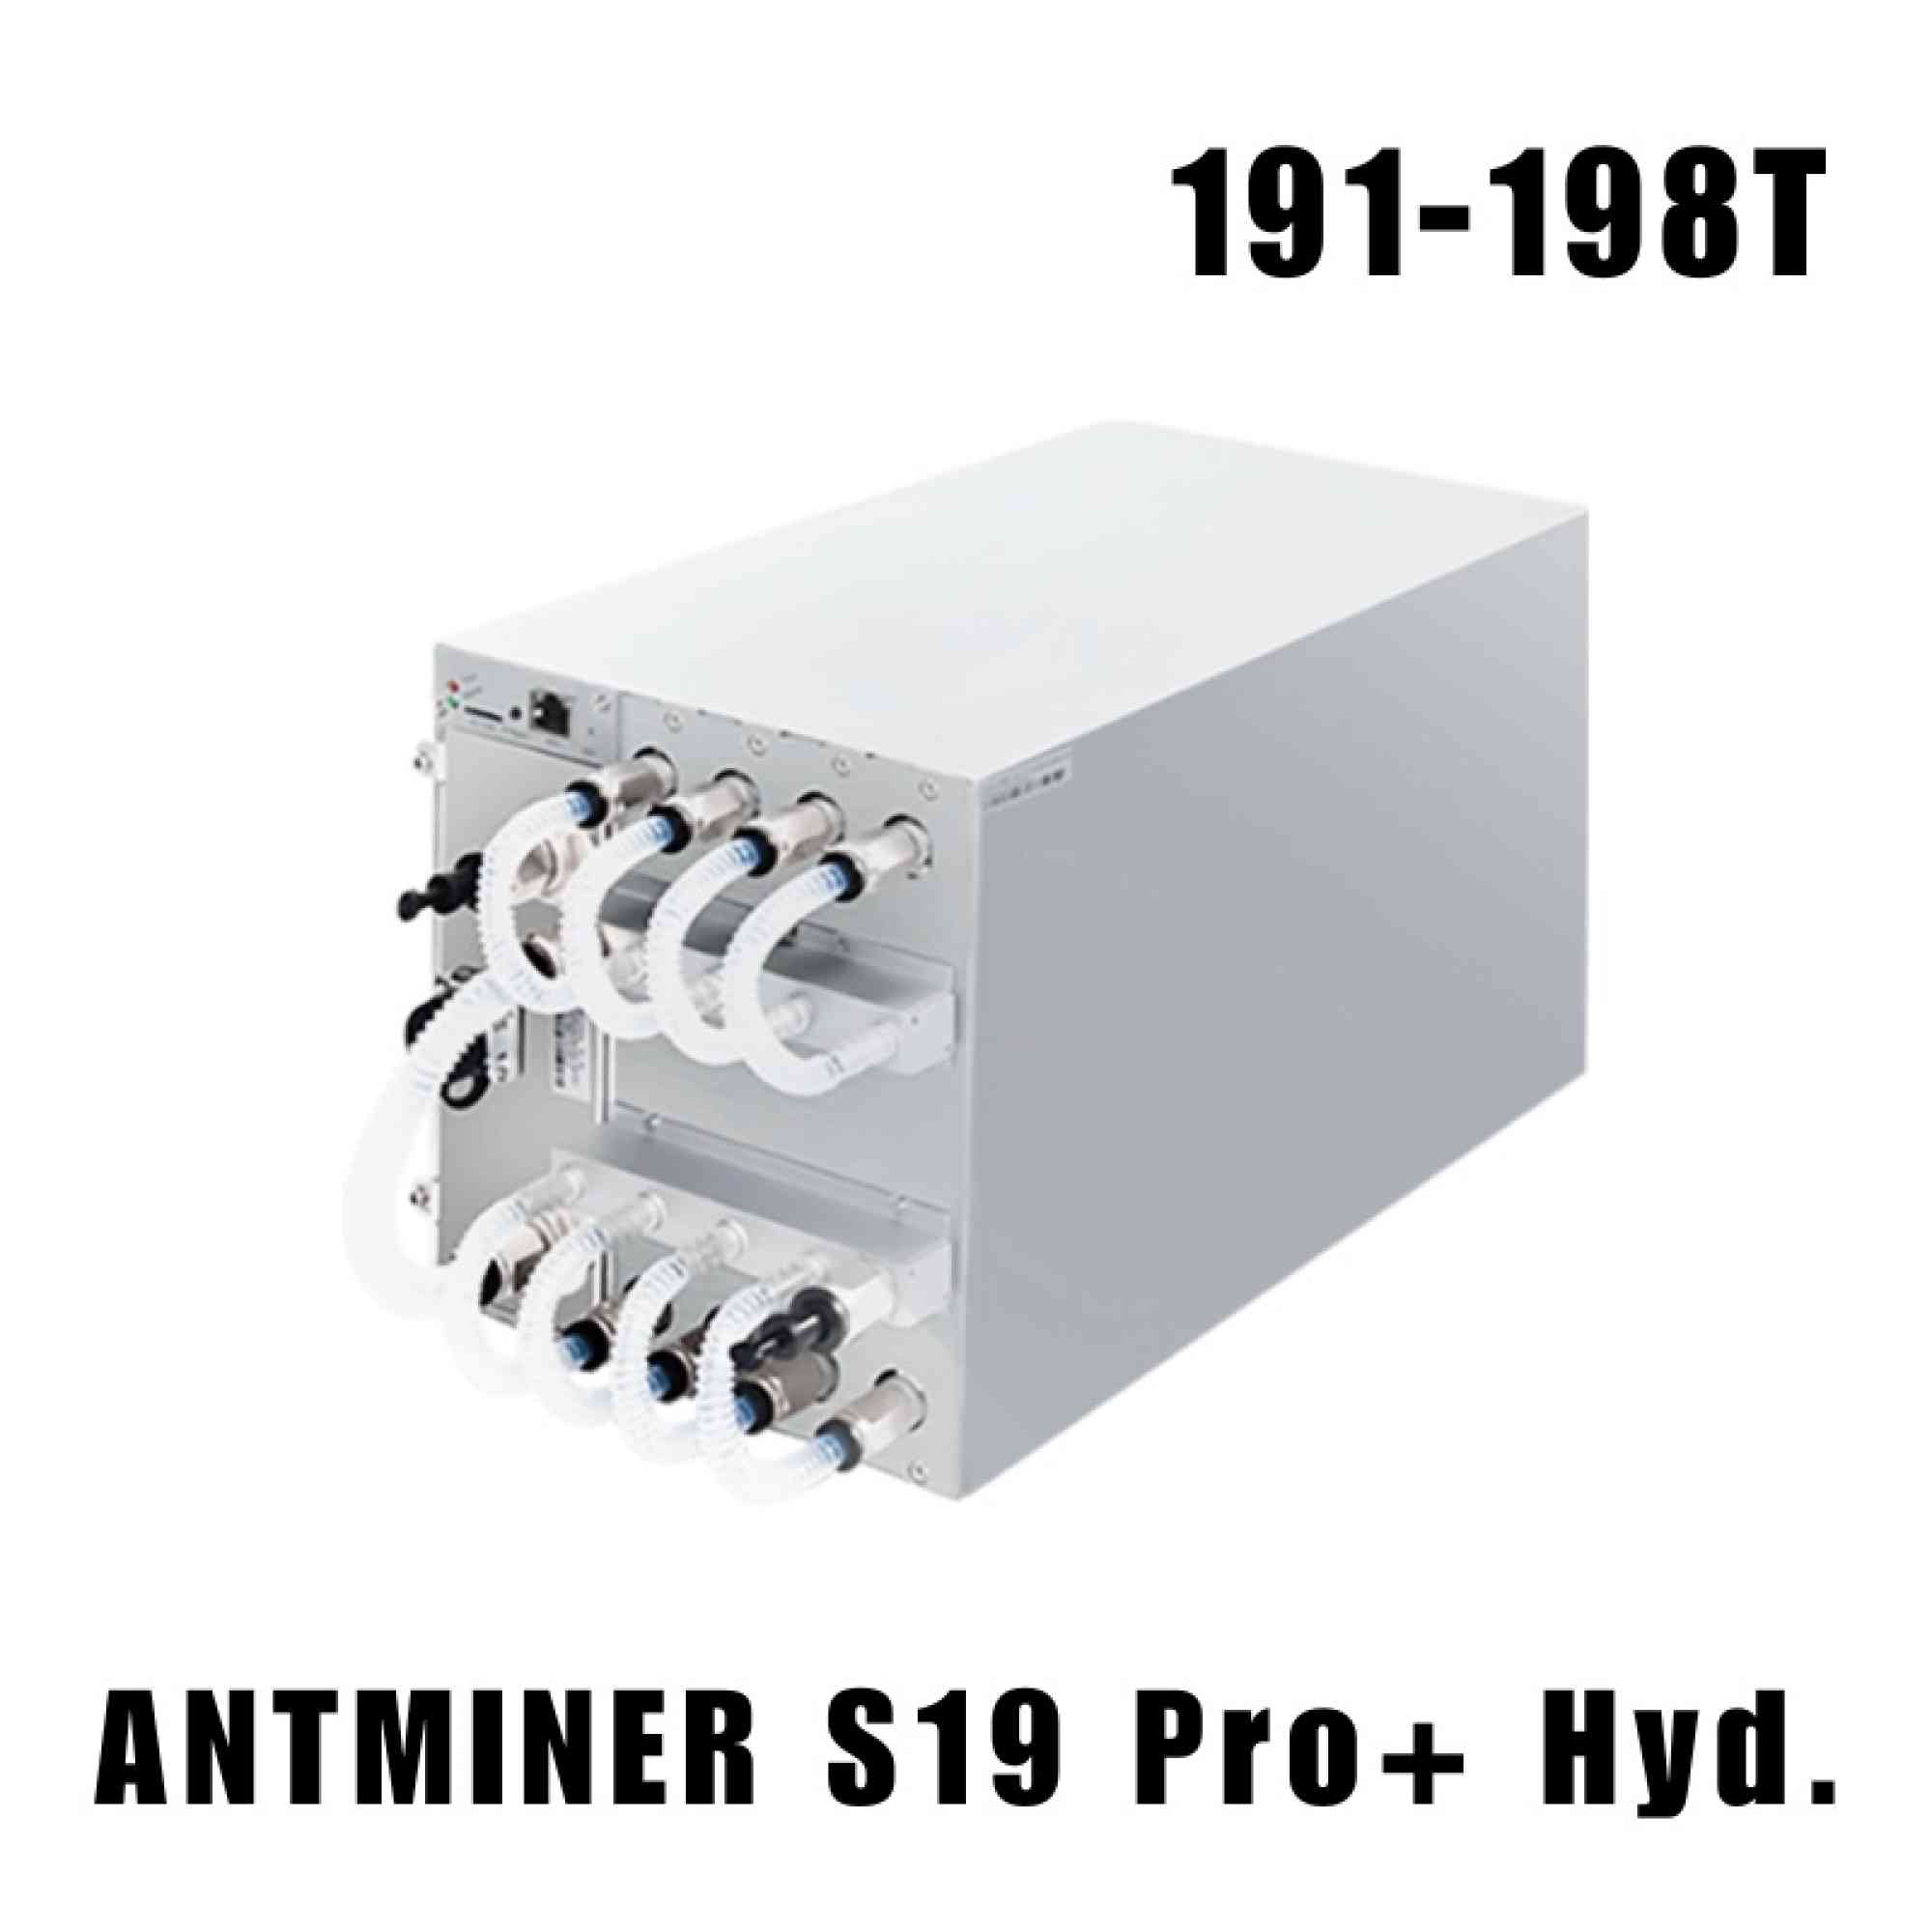 Bitmain Antminer S19 Pro+ Hydro 191 - 198T Bt en anuncio clasificado